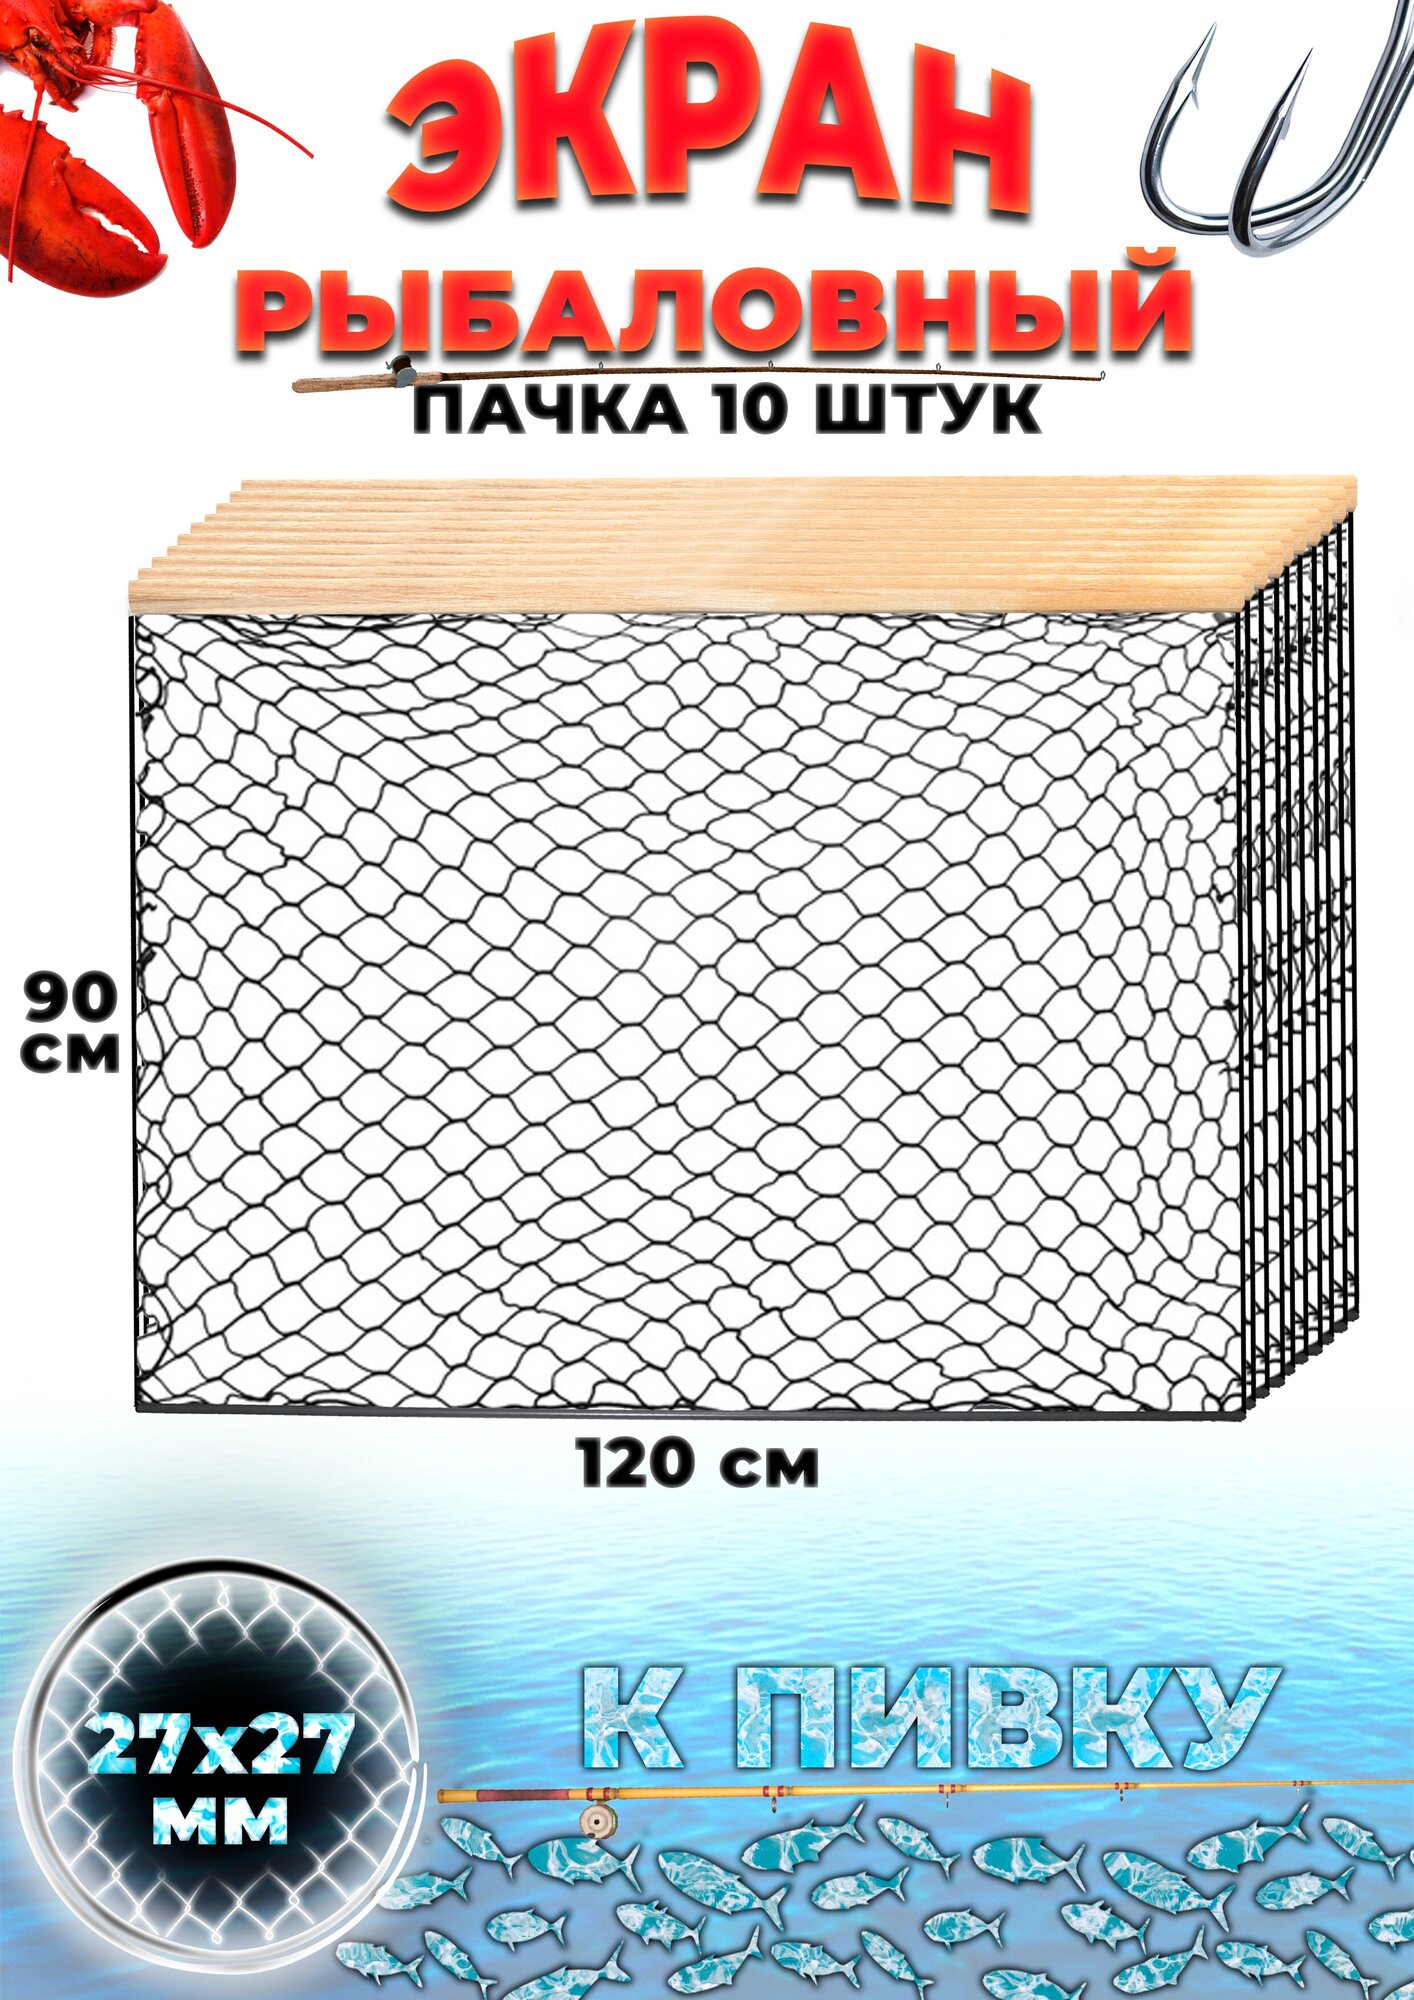 Экран рыболовный защитный оснащенный маскировочный, ячейка 27мм (набор 10 шт.)